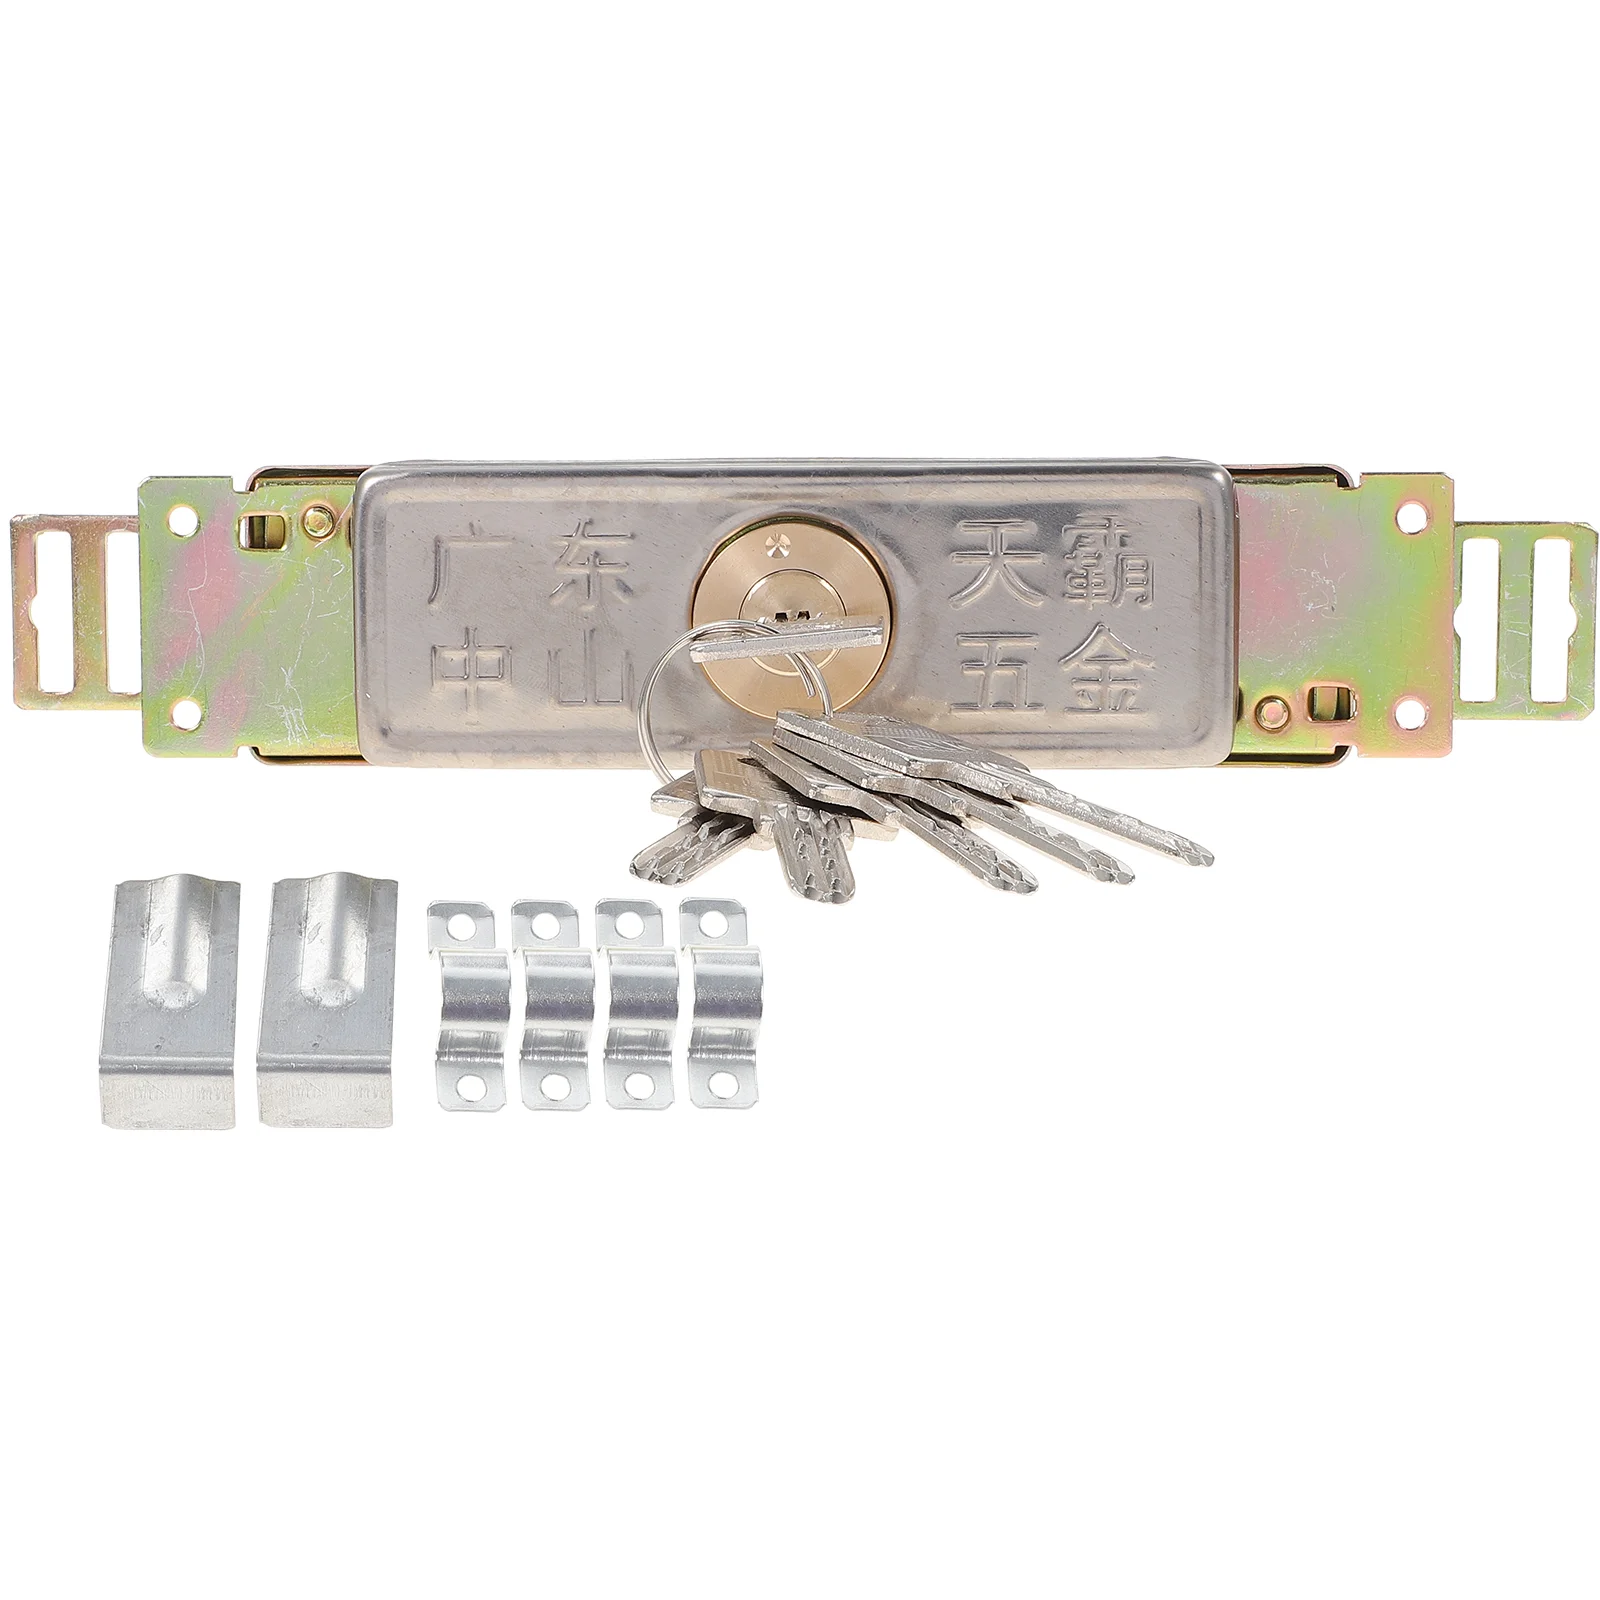 

Roller Door Lock Vertical Latch Warehouse Keyway Security Home Metal Shutter Garage With Keys Rolling Universal intercom